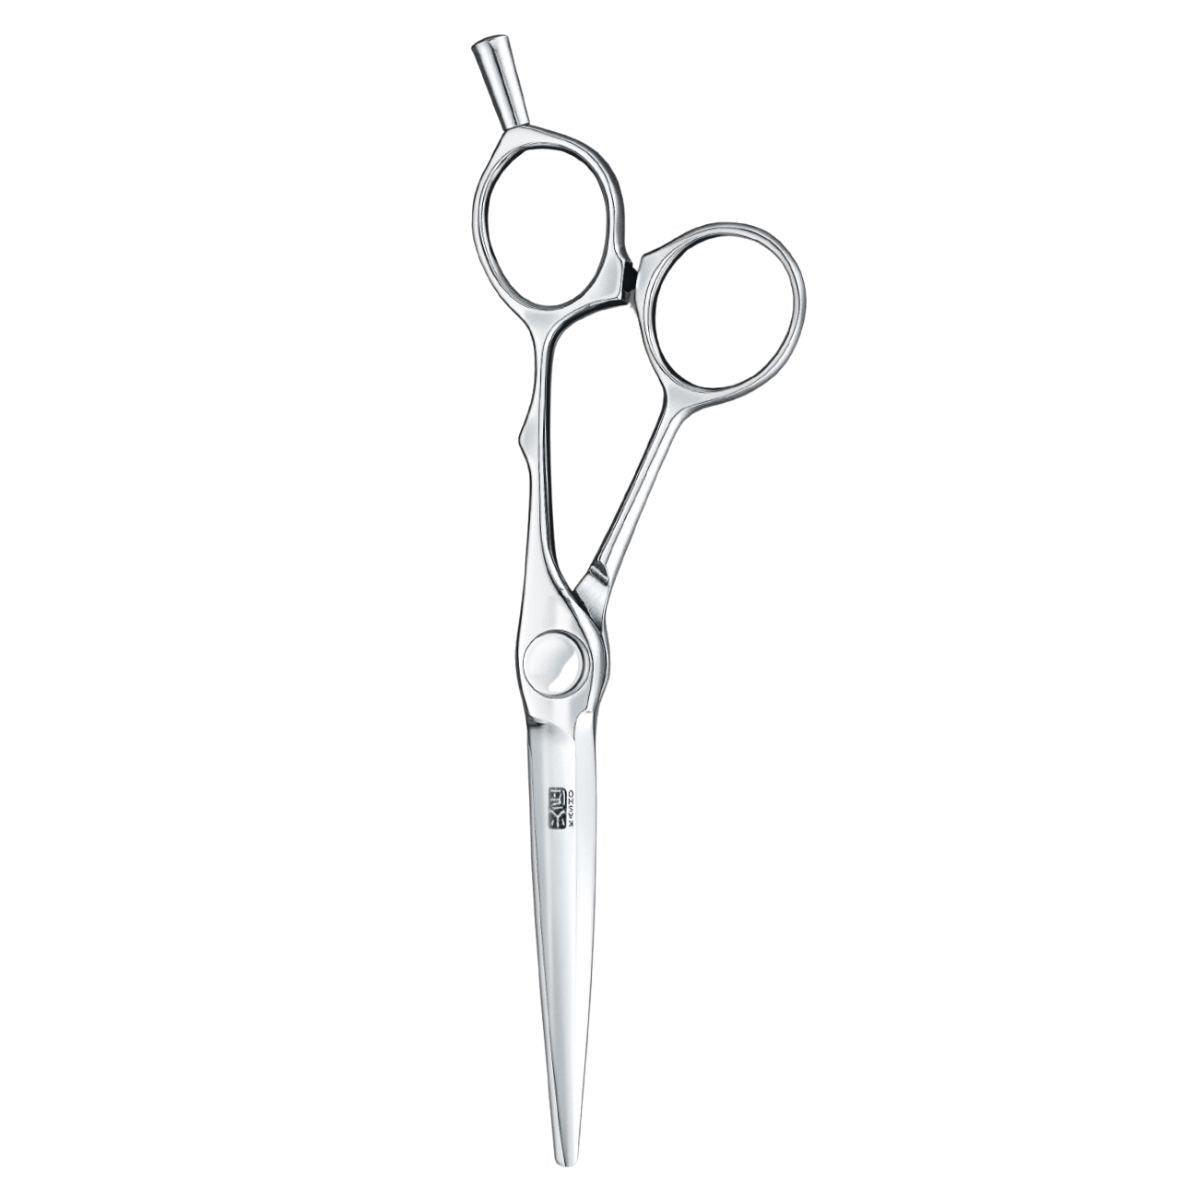 Kasho Millennium Offset Hair Cutting Scissors - Japan Scissors